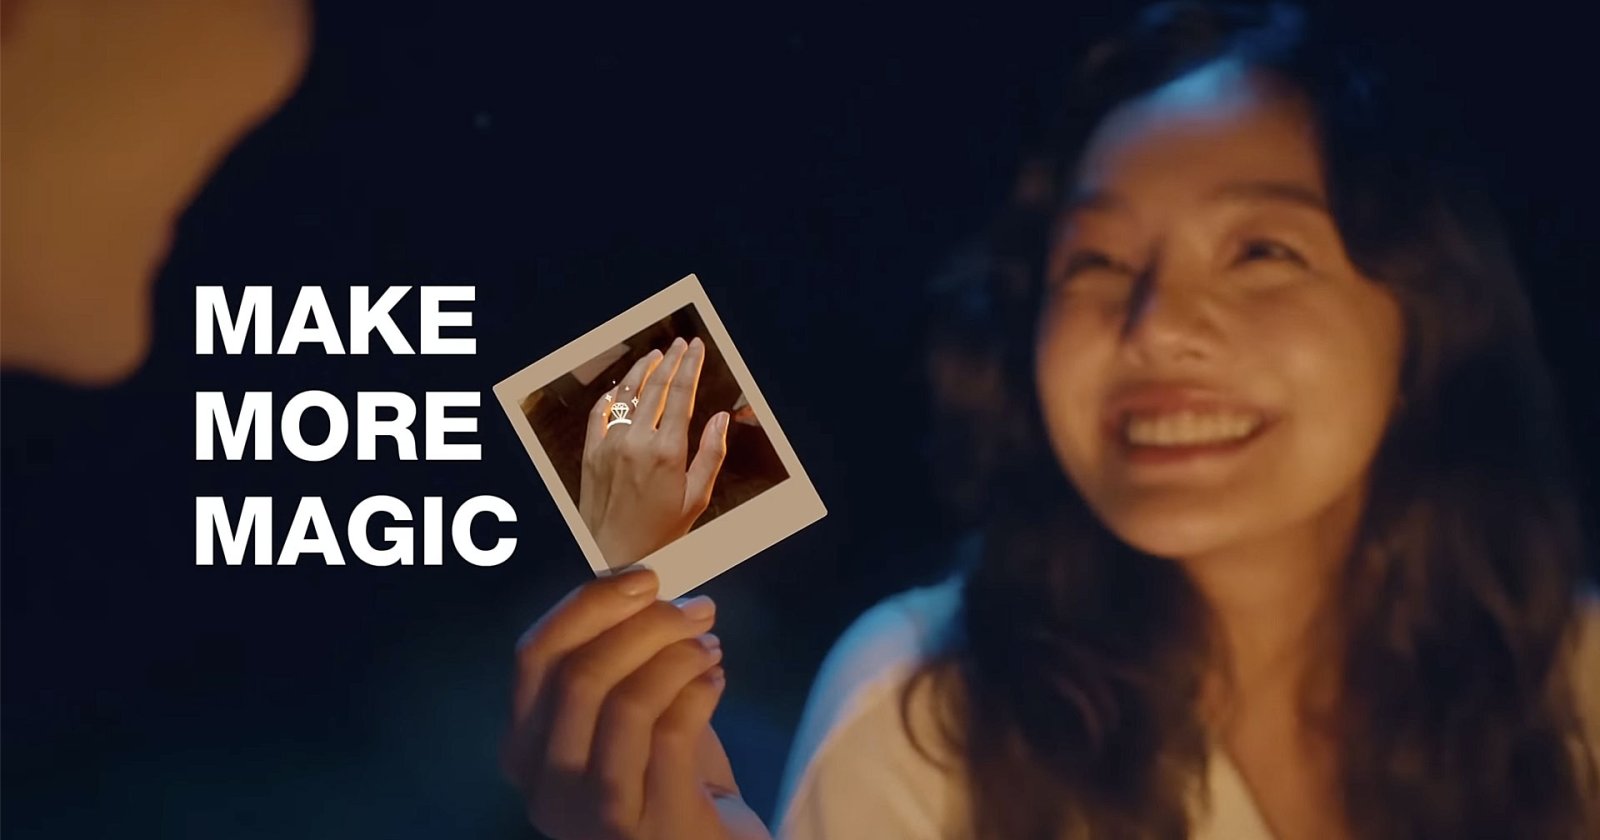 ฟูจิฟิล์ม “Make More Magic” ถ่ายทอดความรู้สึกยิ่งใหญ่ที่ไฟล์ดิจิทัลให้ไม่ได้ ในโฆษณาชุดพิเศษ ด้วยฟิล์มอินสแตกซ์